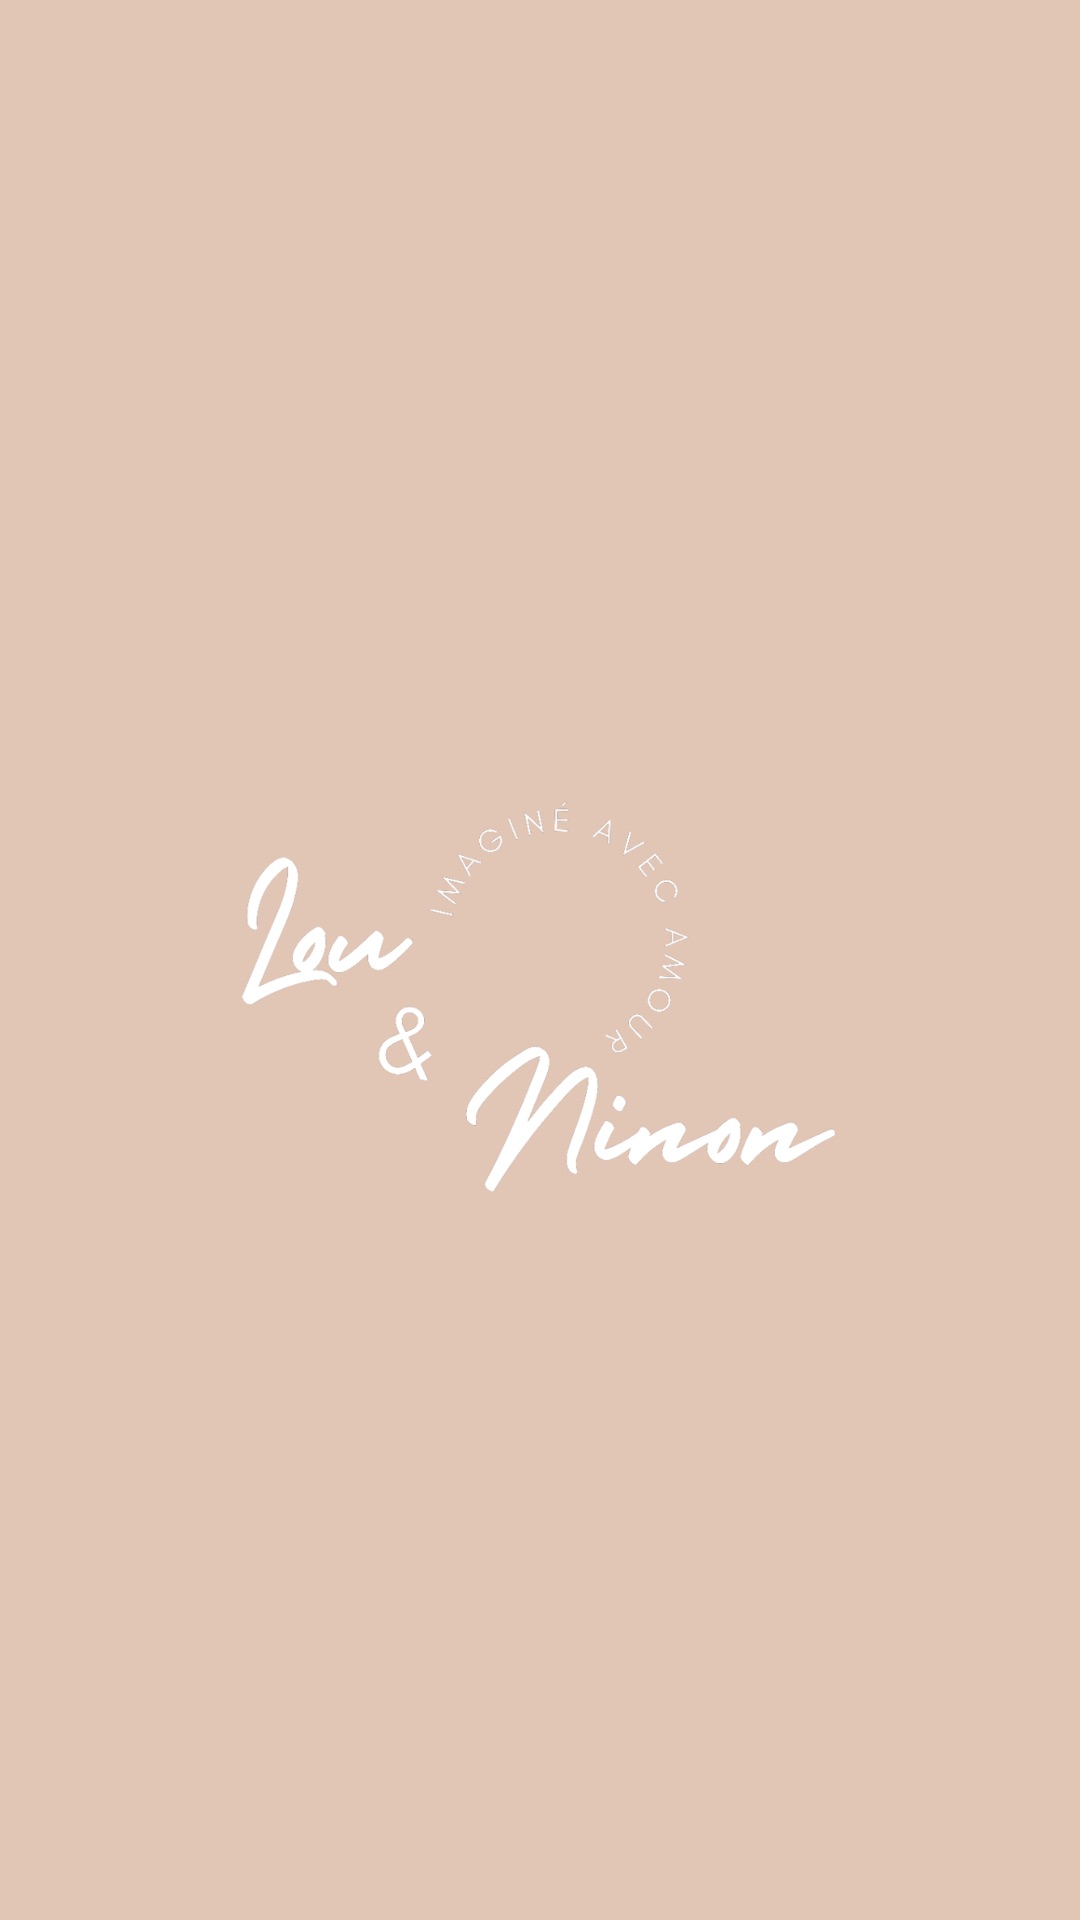 Logo marque Lou & Ninon